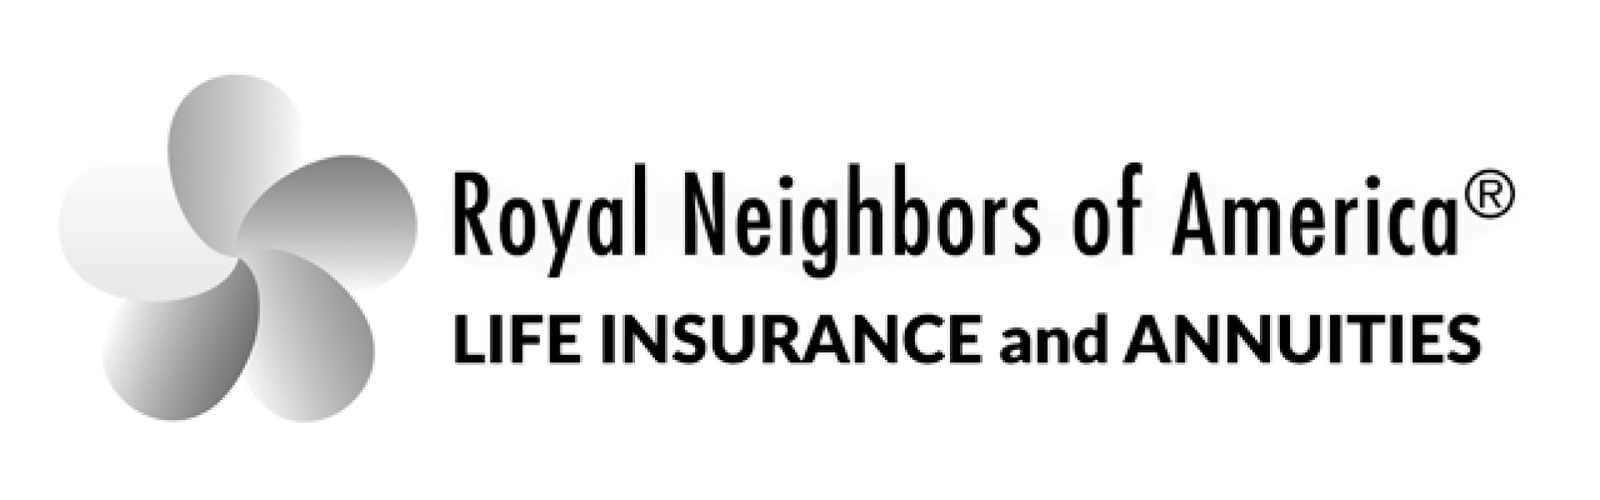 5d1389d2decfccdd3cae4c7a_logo-royal-neighbors 3